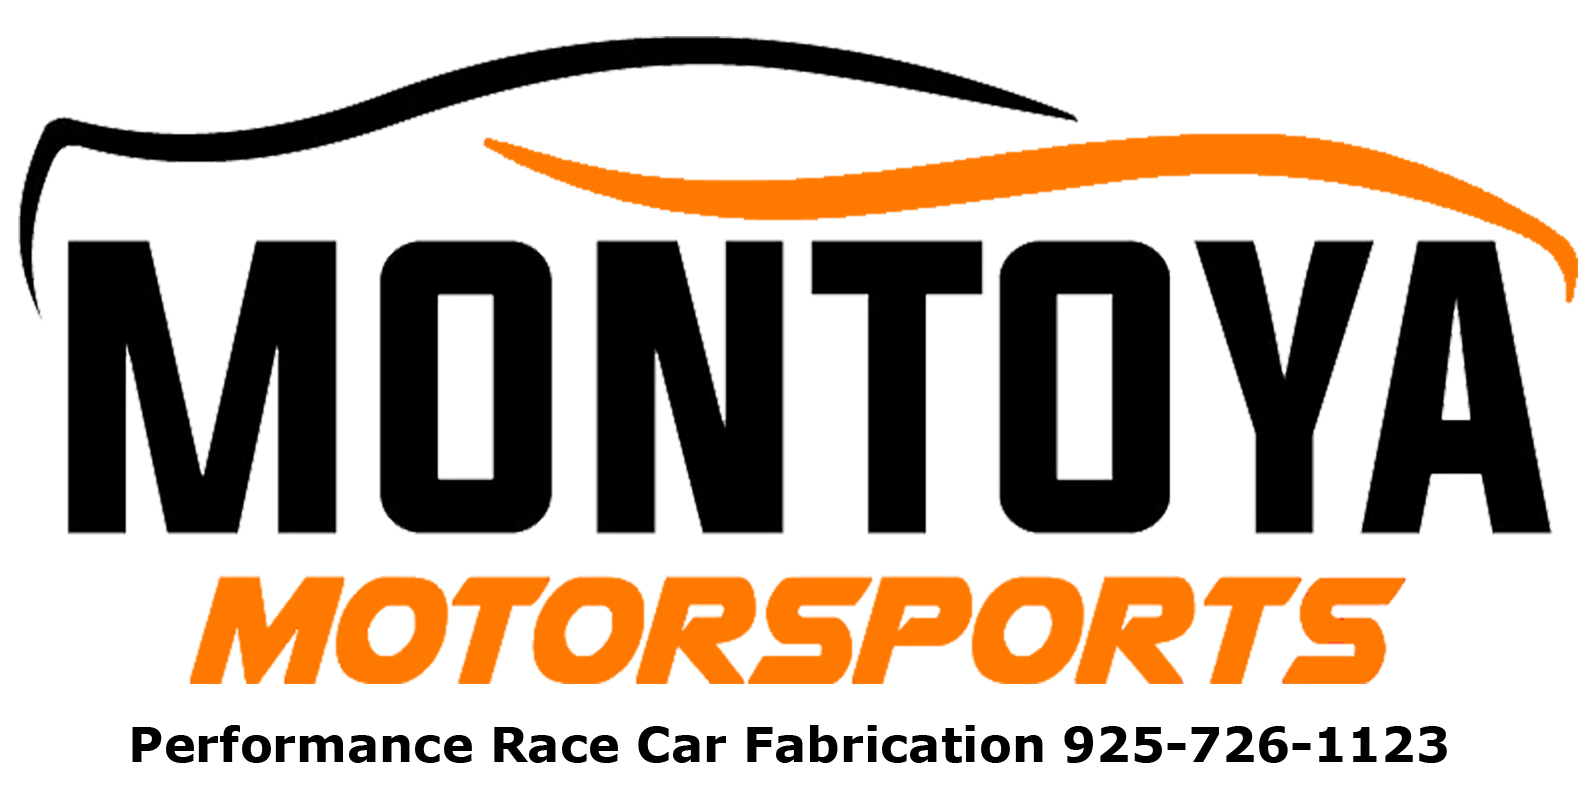 Montoya Motorsports